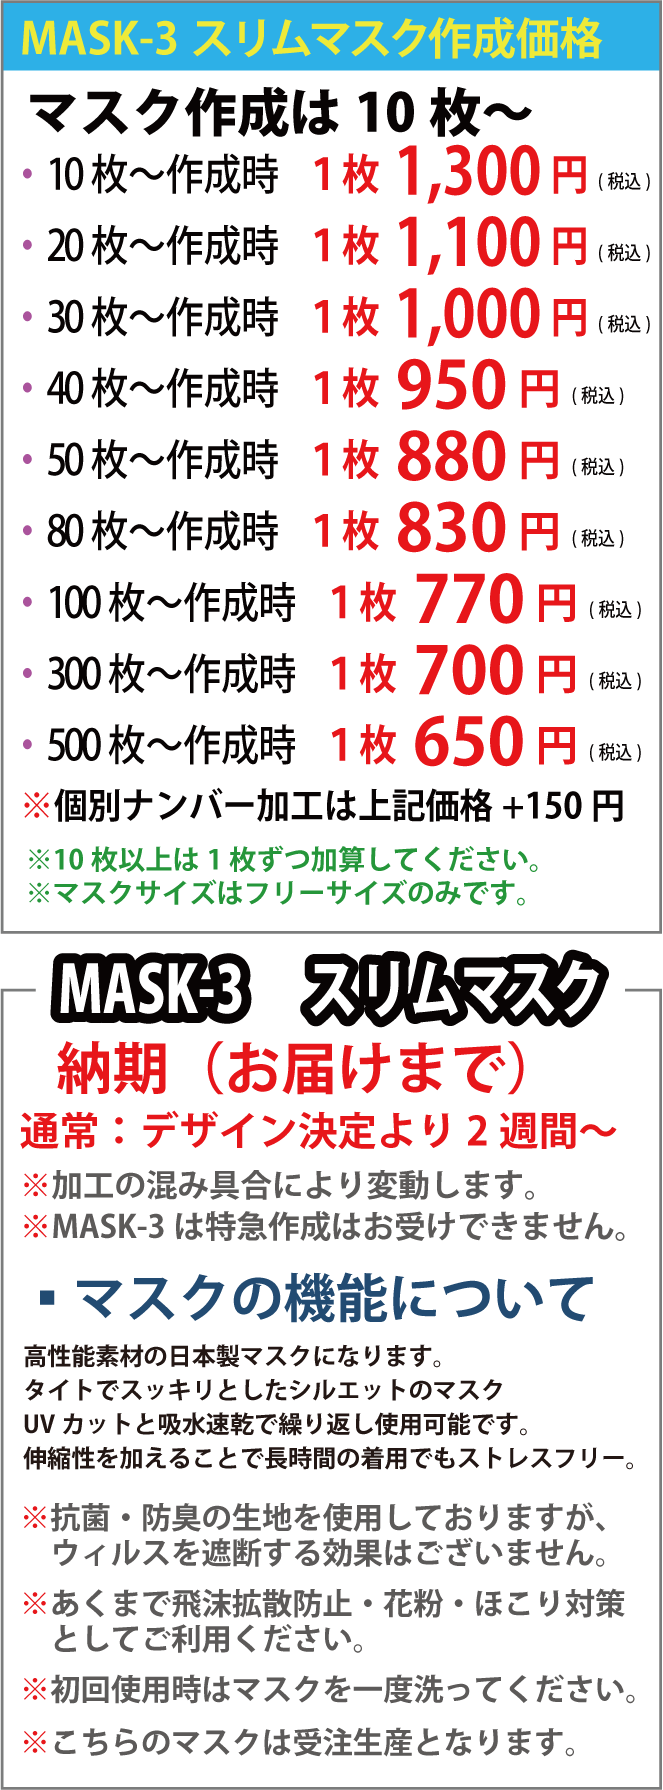 チームマスク オリジナルの作成 日本製 I Love Print